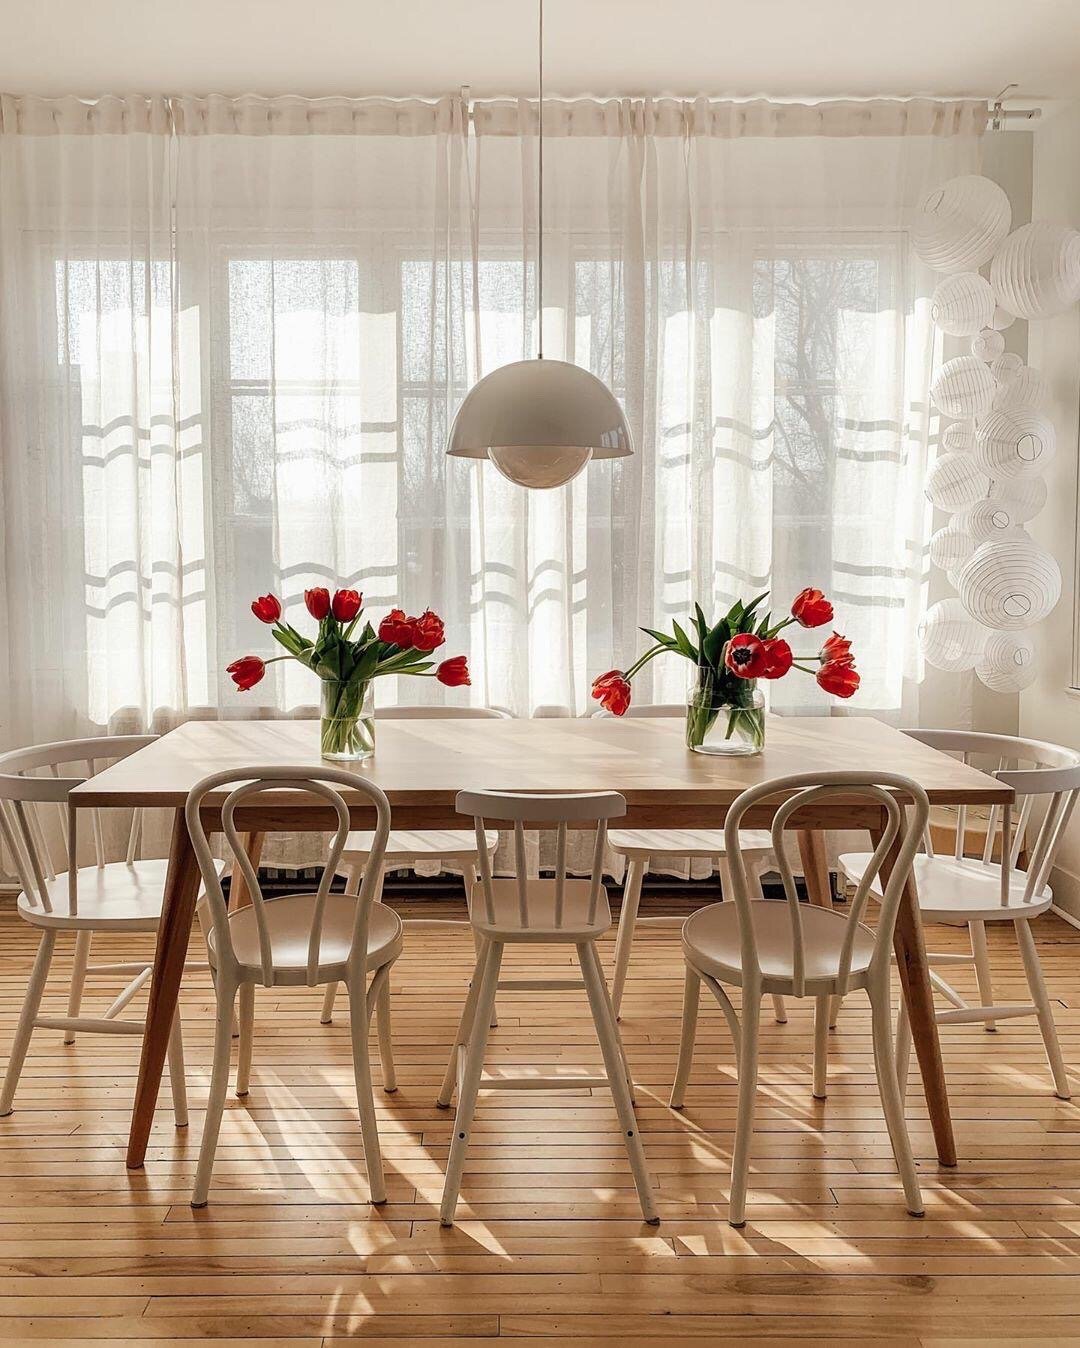 Căn hộ nhỏ màu trắng kem đẹp như mơ với điểm nhấn từ nội thất gỗ thân thiện - Ảnh 6.